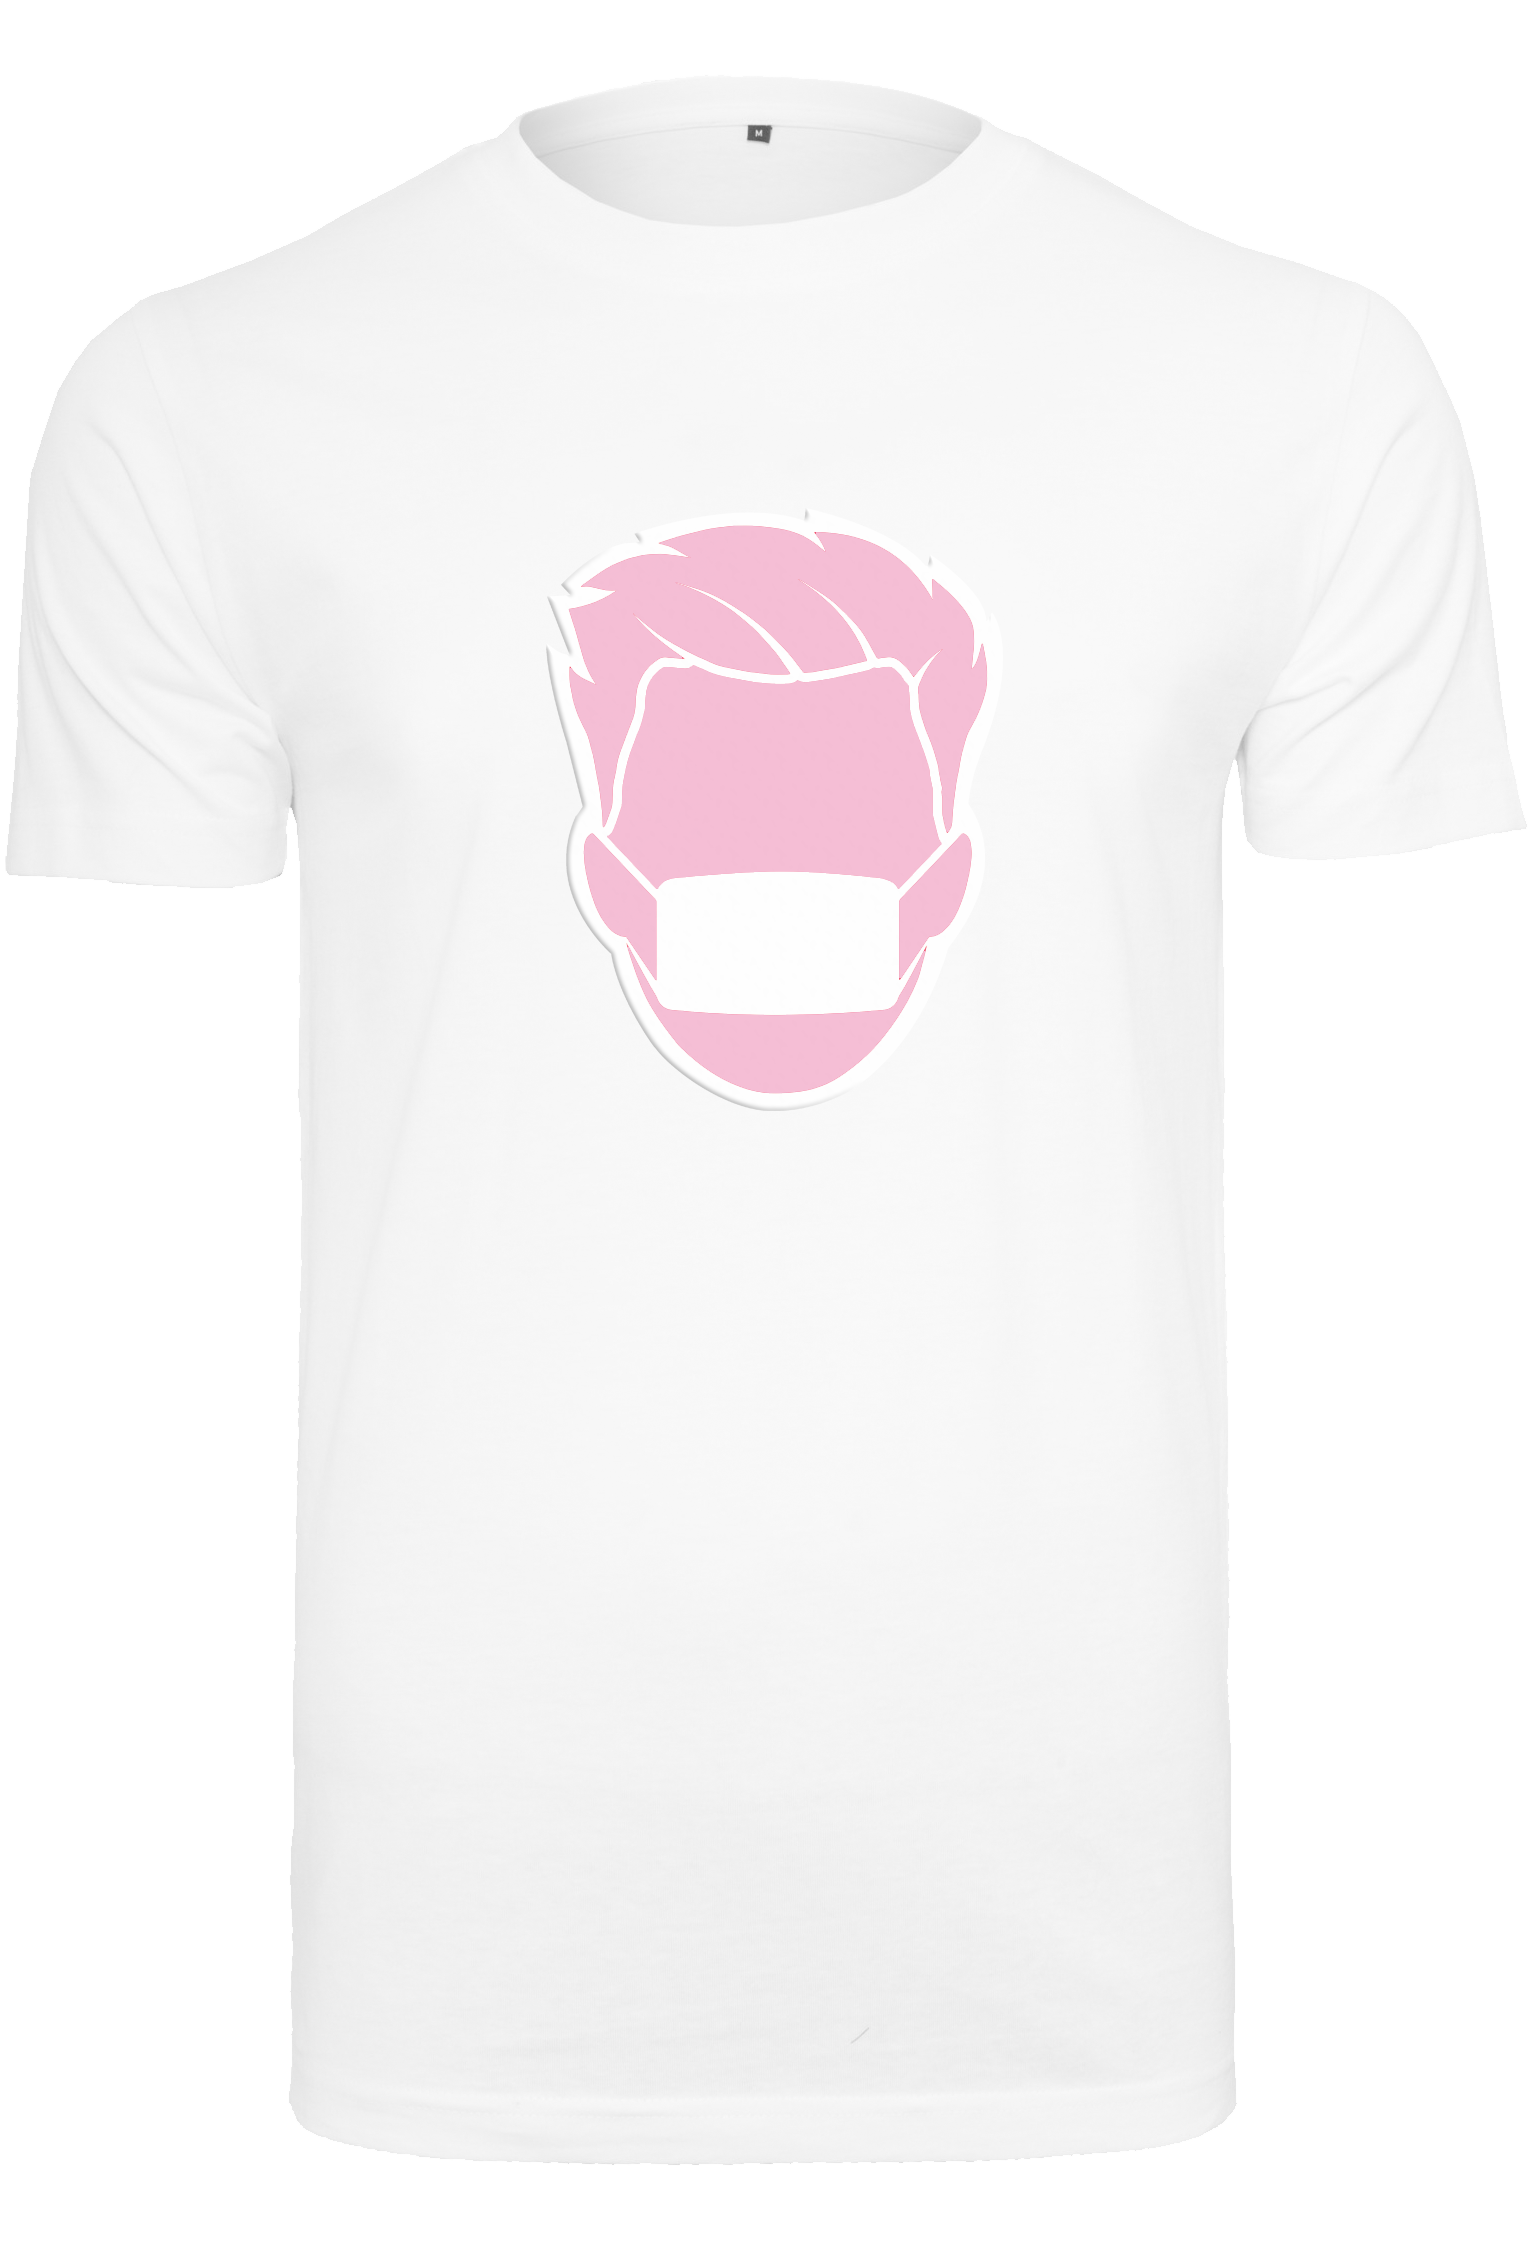 Pinkkarl white T-Shirt